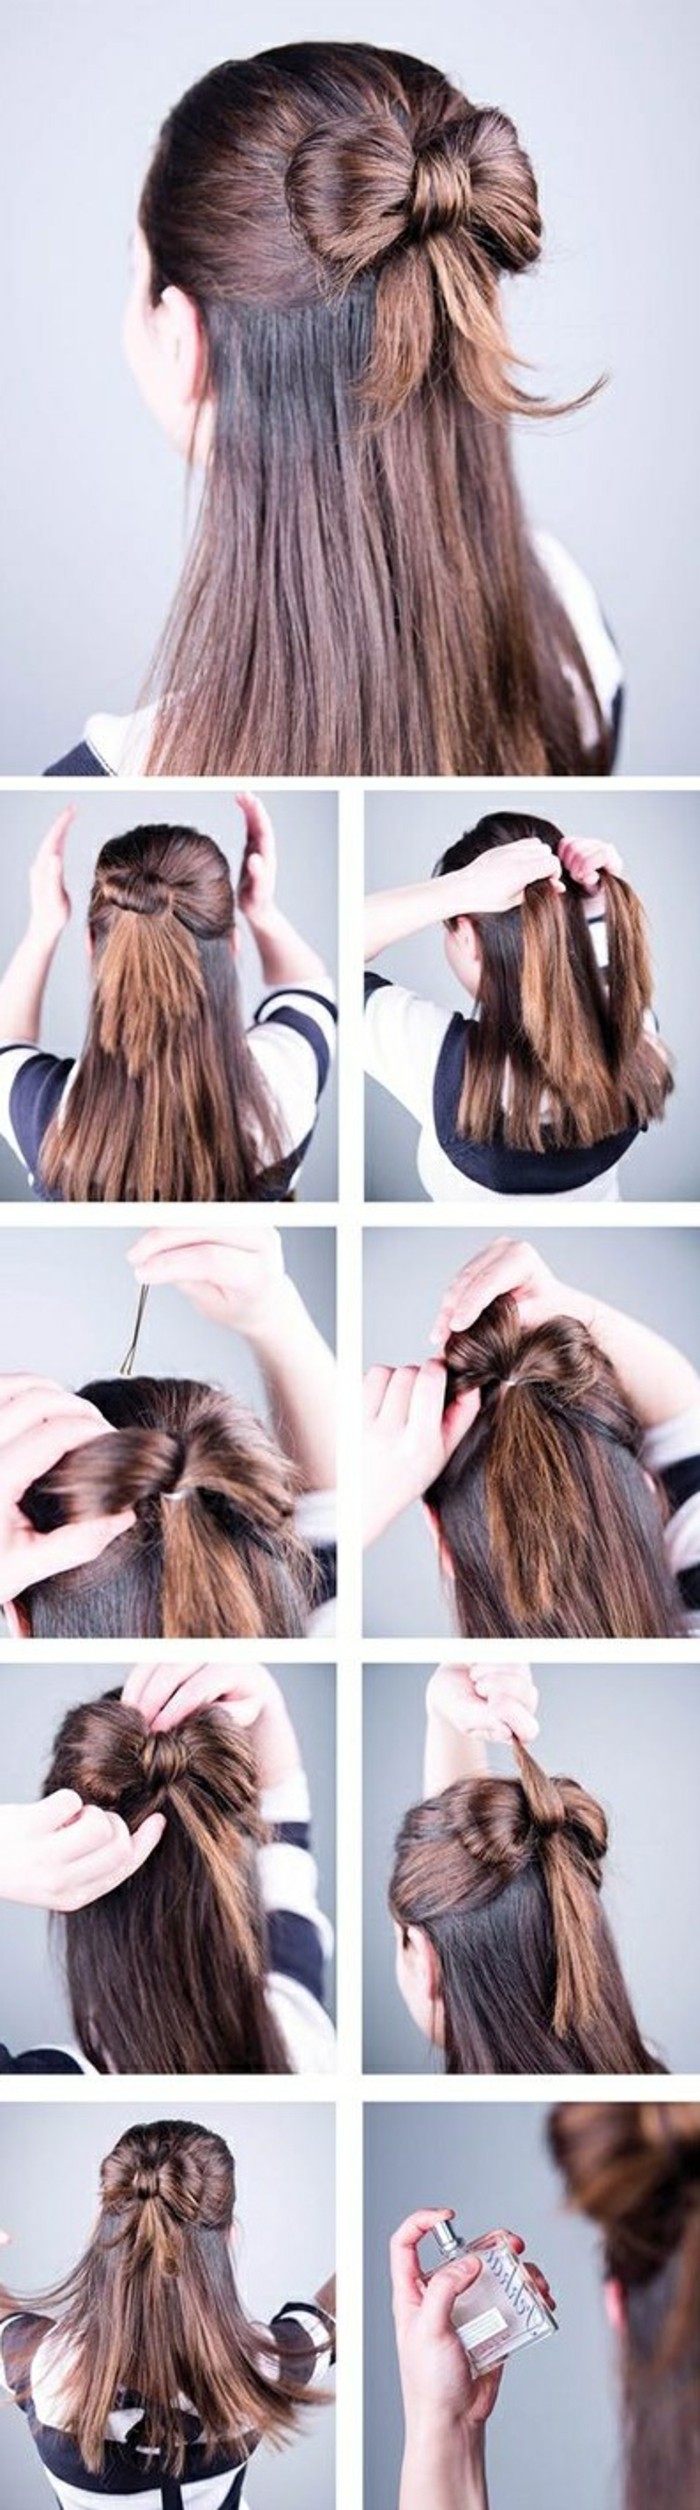 تسريحات الشعر-سريعة المتوسطة آنج البني على نحو سلس الشعر القوس-القيام بذلك نفسك،